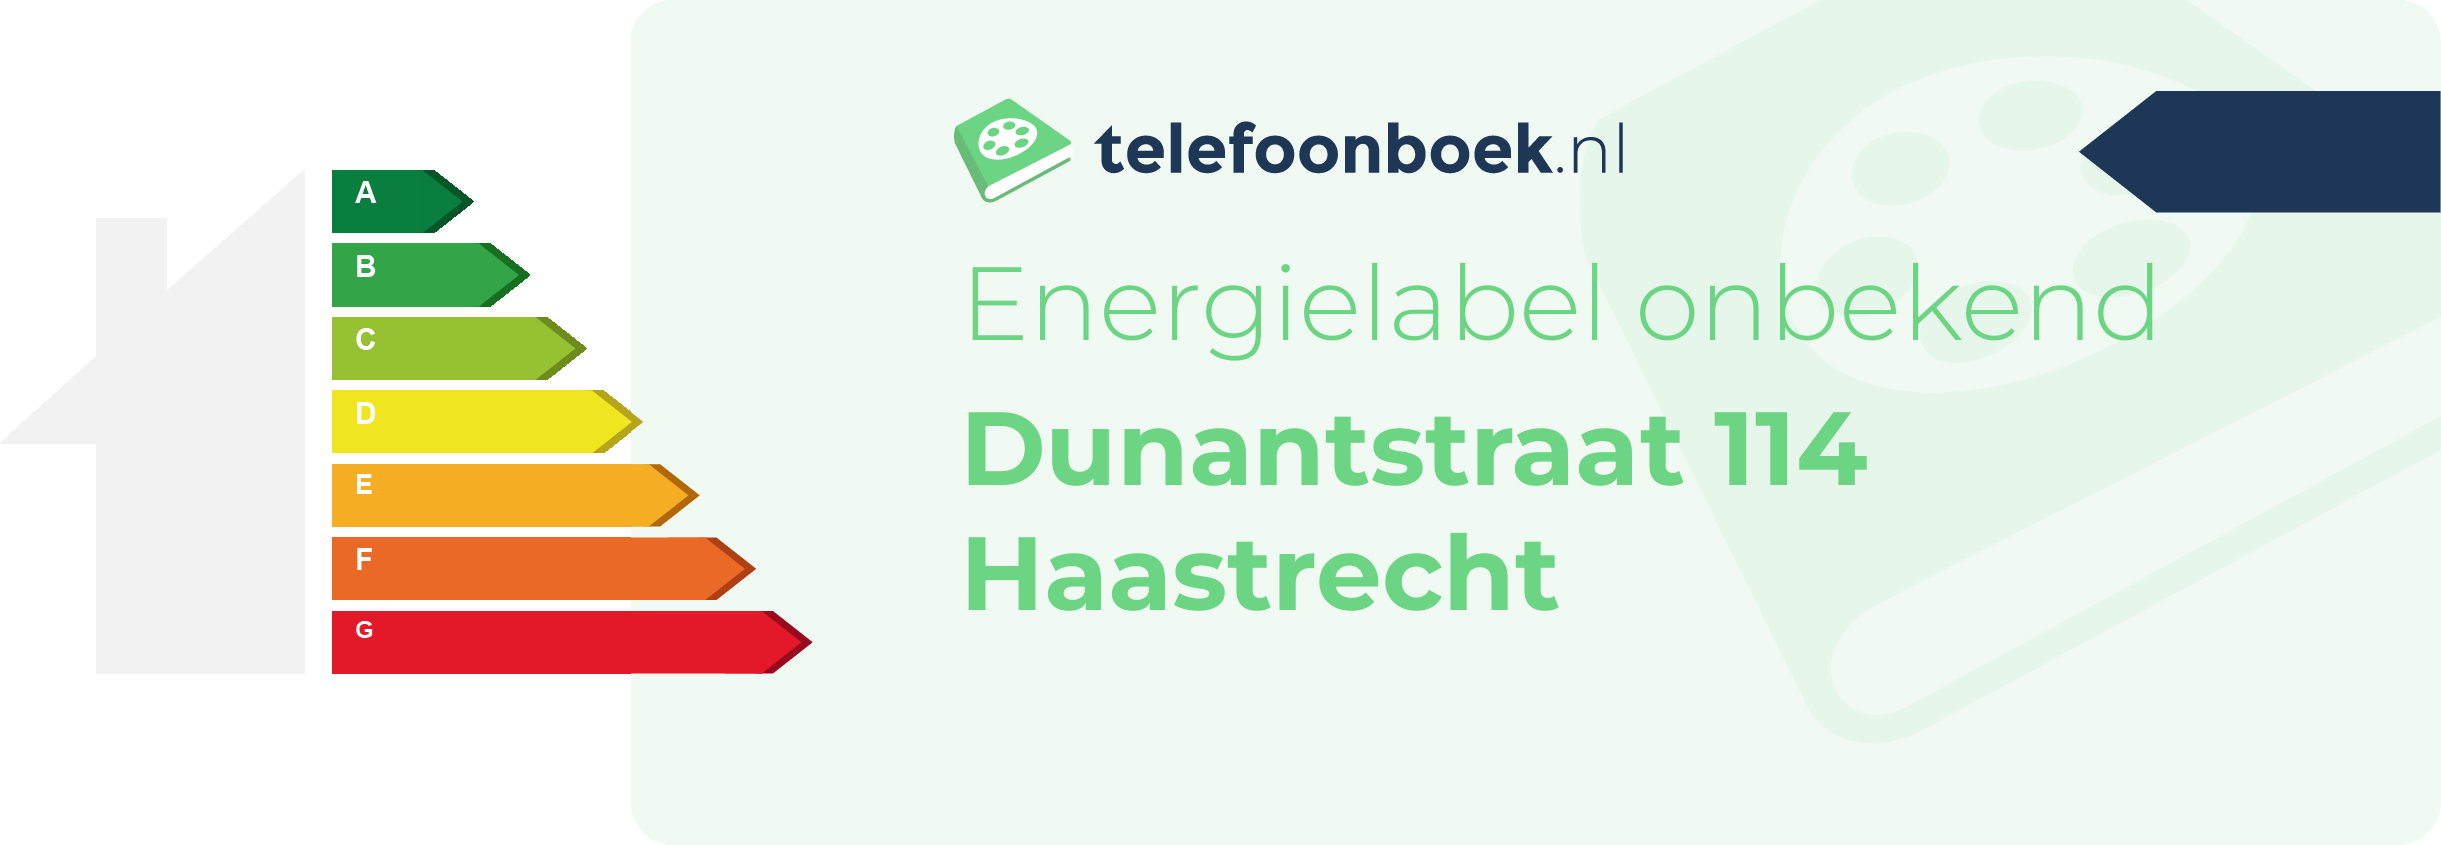 Energielabel Dunantstraat 114 Haastrecht